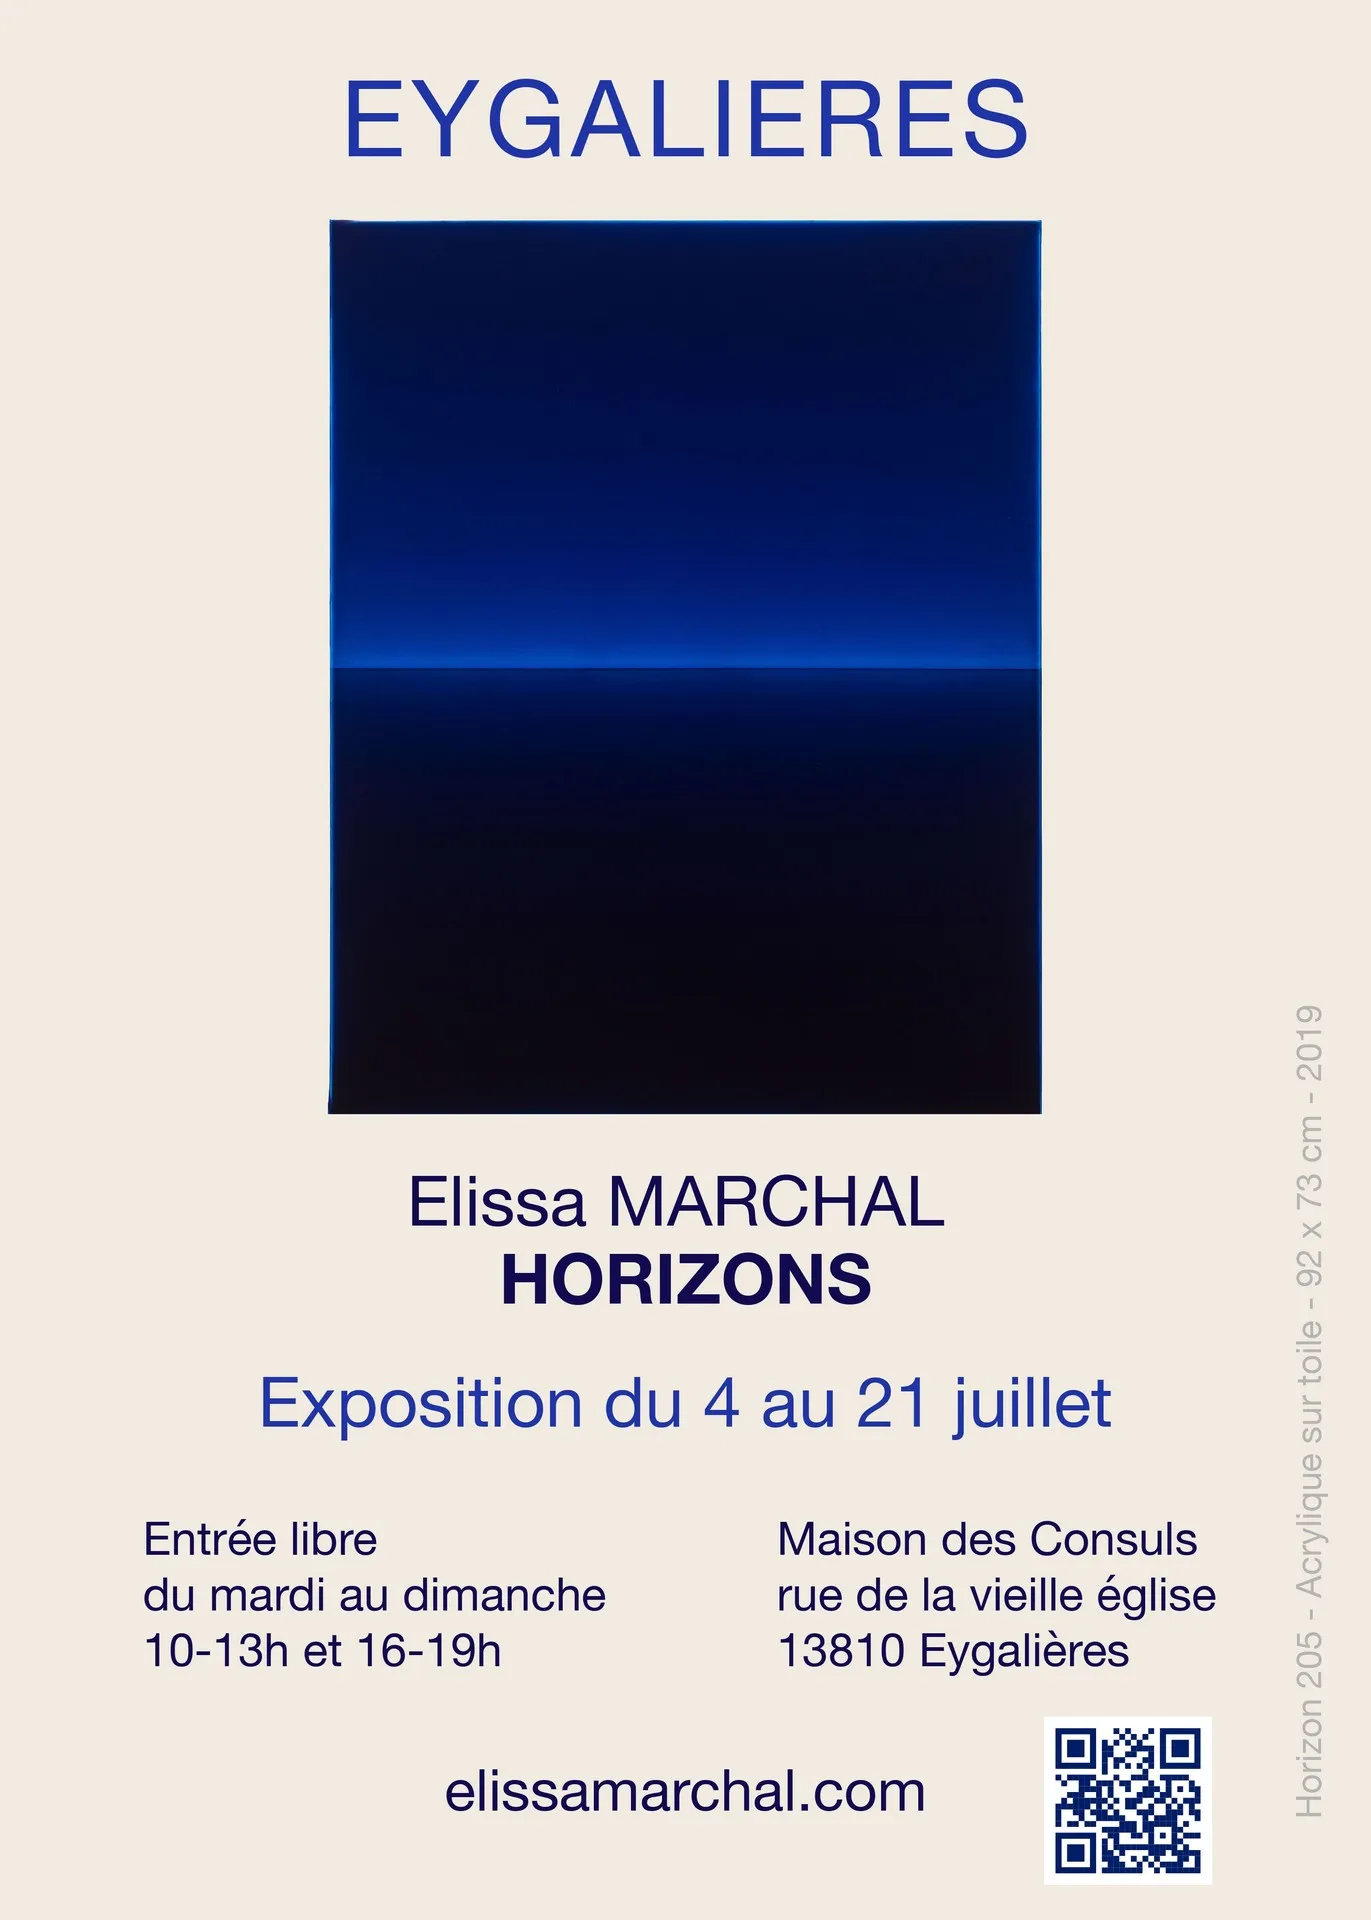 Image qui illustre: Exposition - Elissa Marchal : Horizons à Eygalières - 1